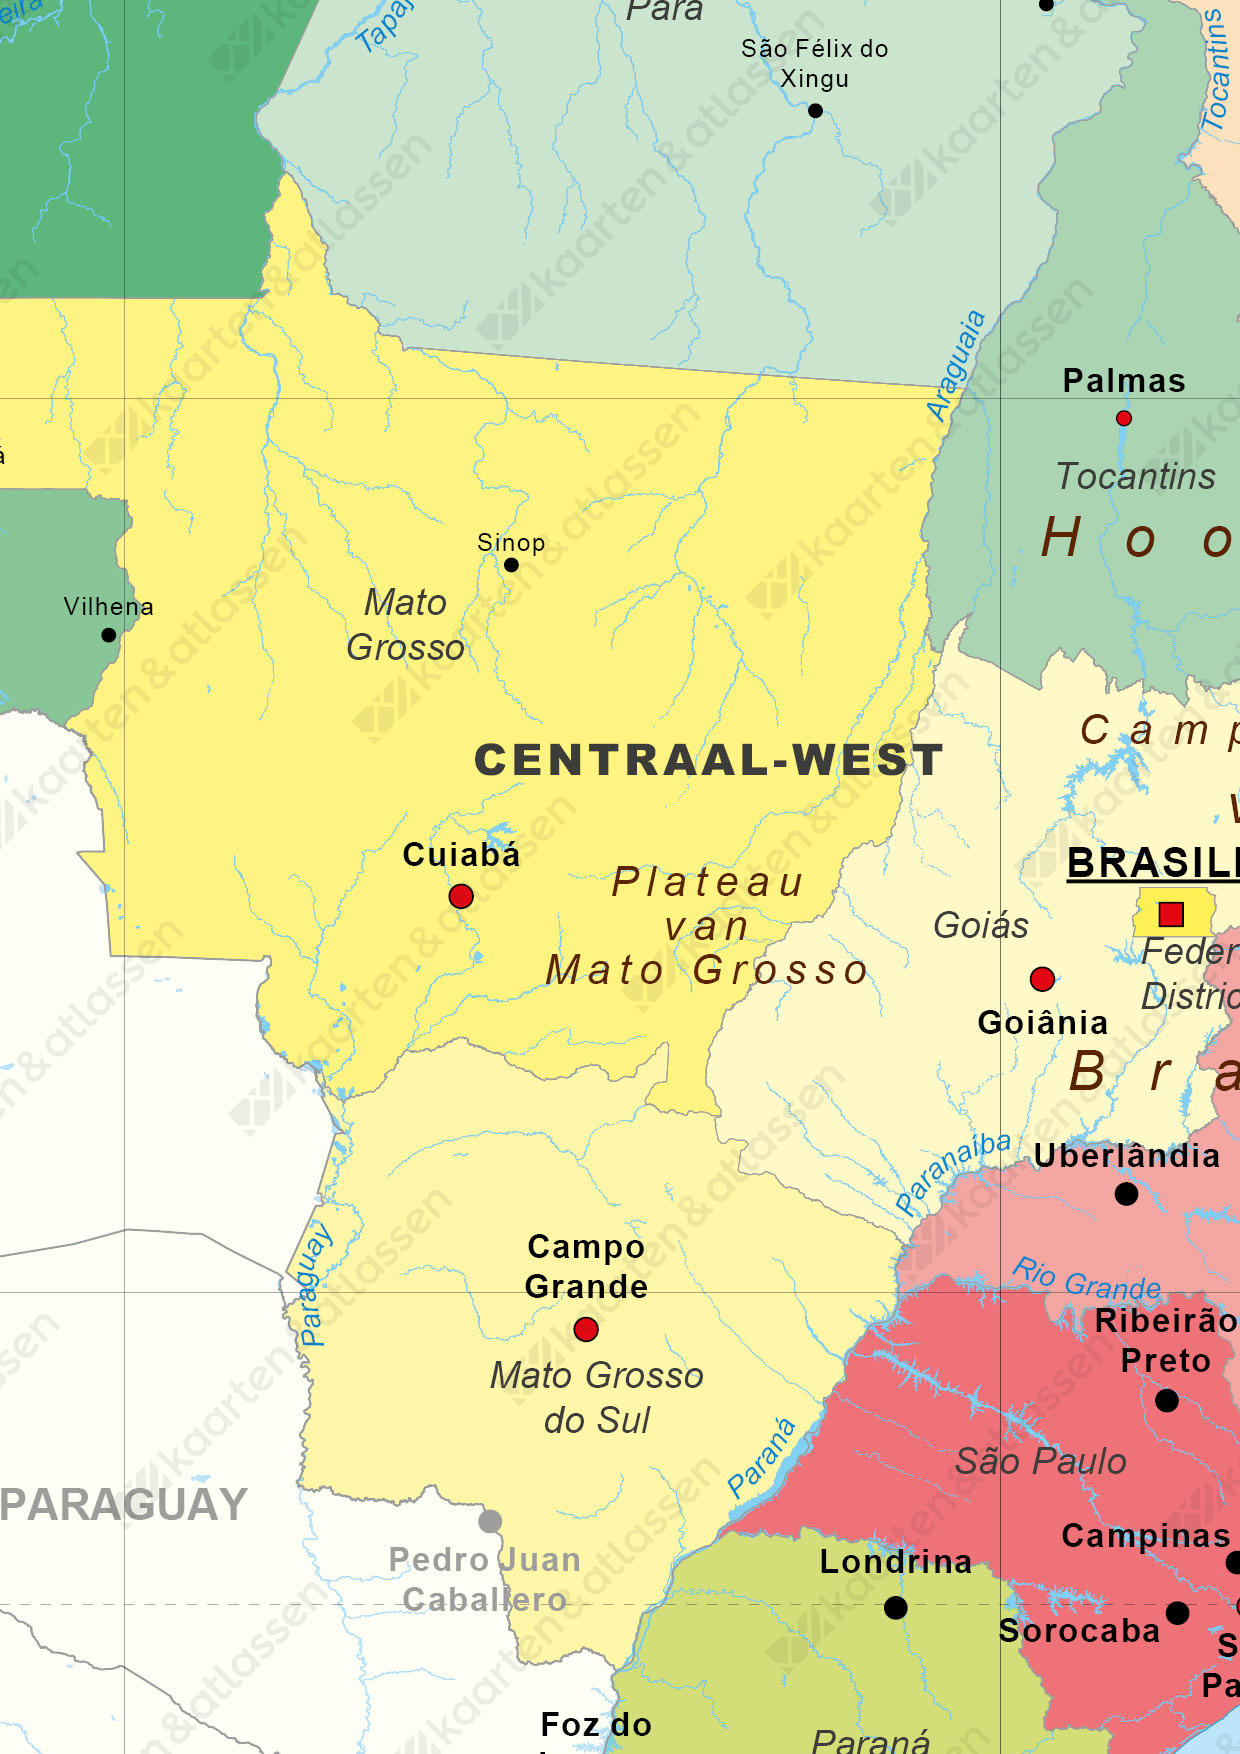 Staatkundige kaart Brazilië